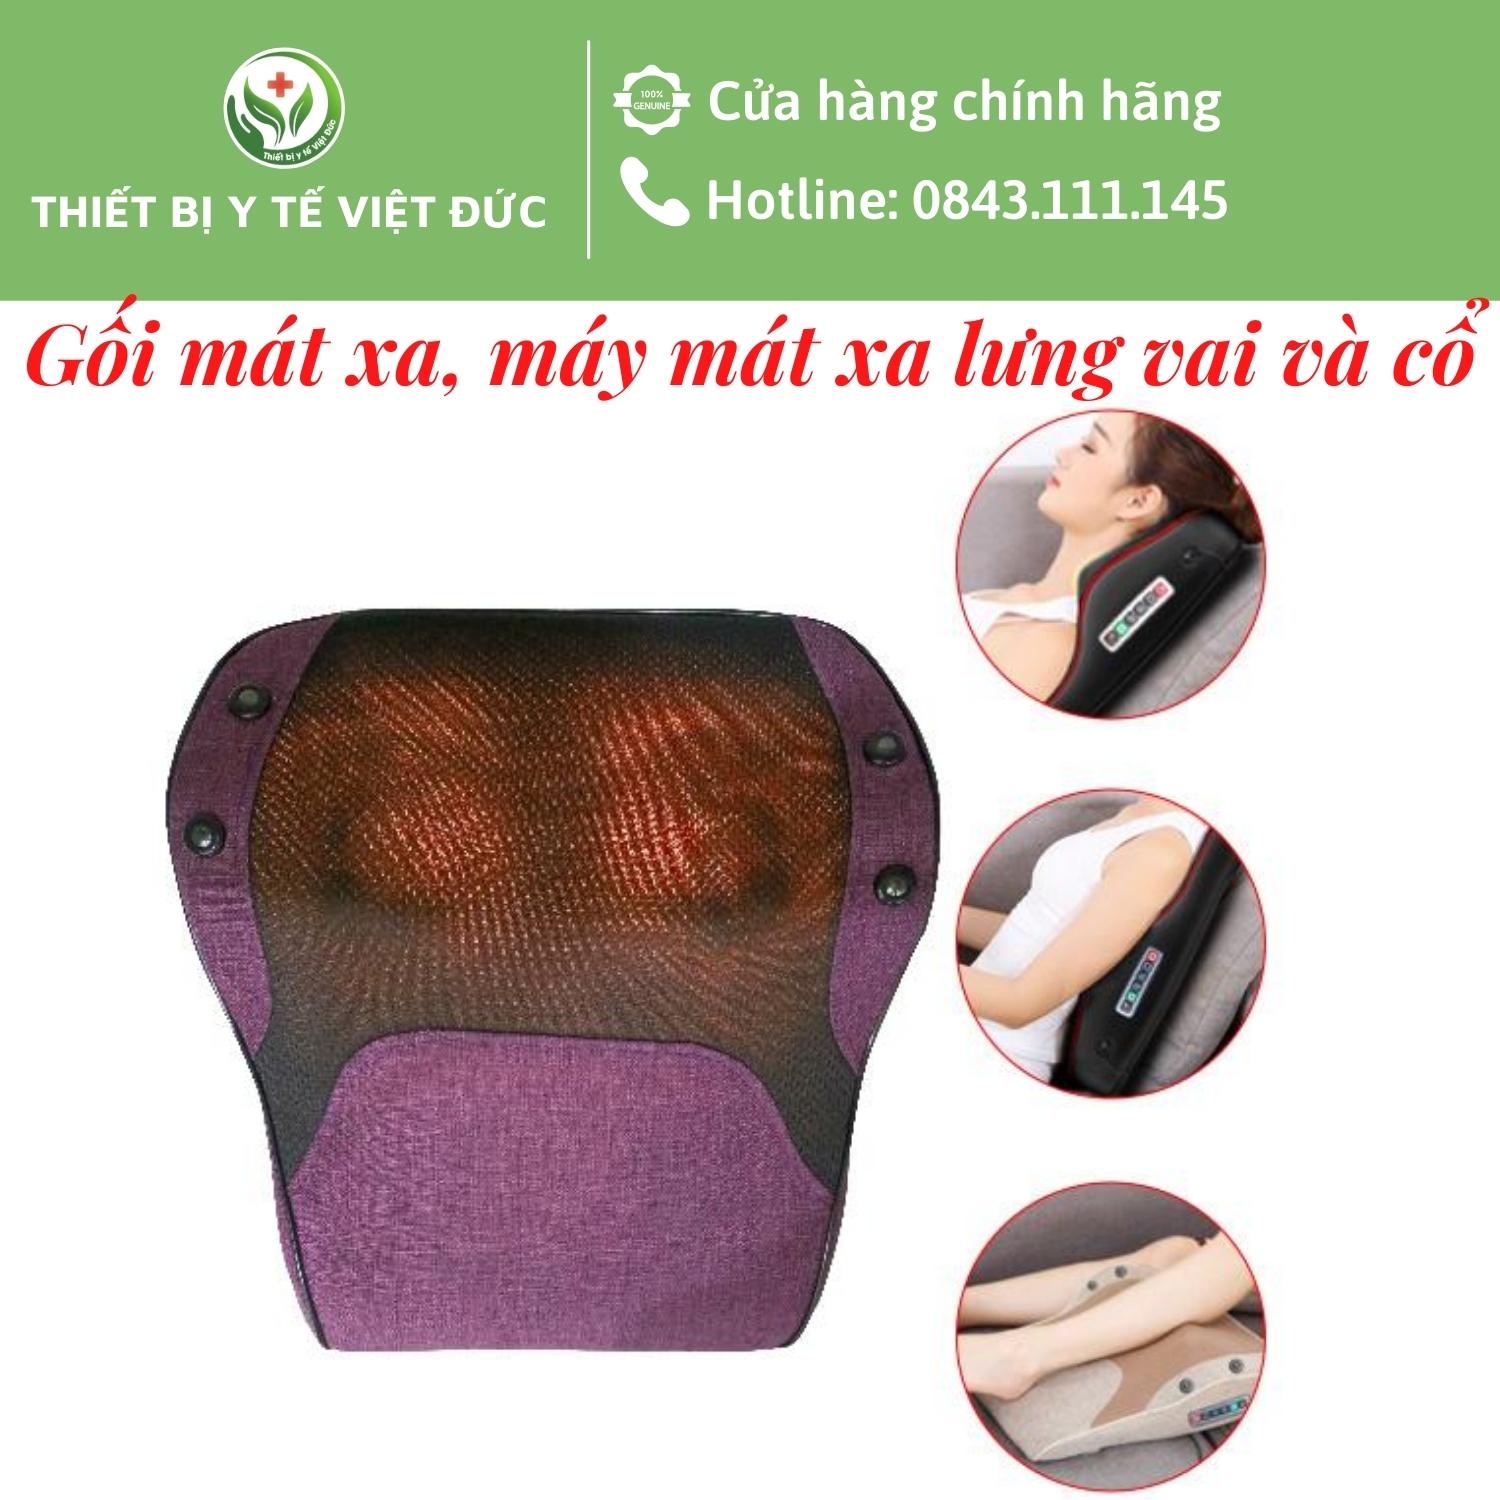 Gối Massage Lưng và Cổ Hồng Ngoại Cao Cấp - HỖ TRỢ GIẢM ĐAU NHỨC CHO NGƯỜI THOÁT VỊ ĐĨA ĐỆM